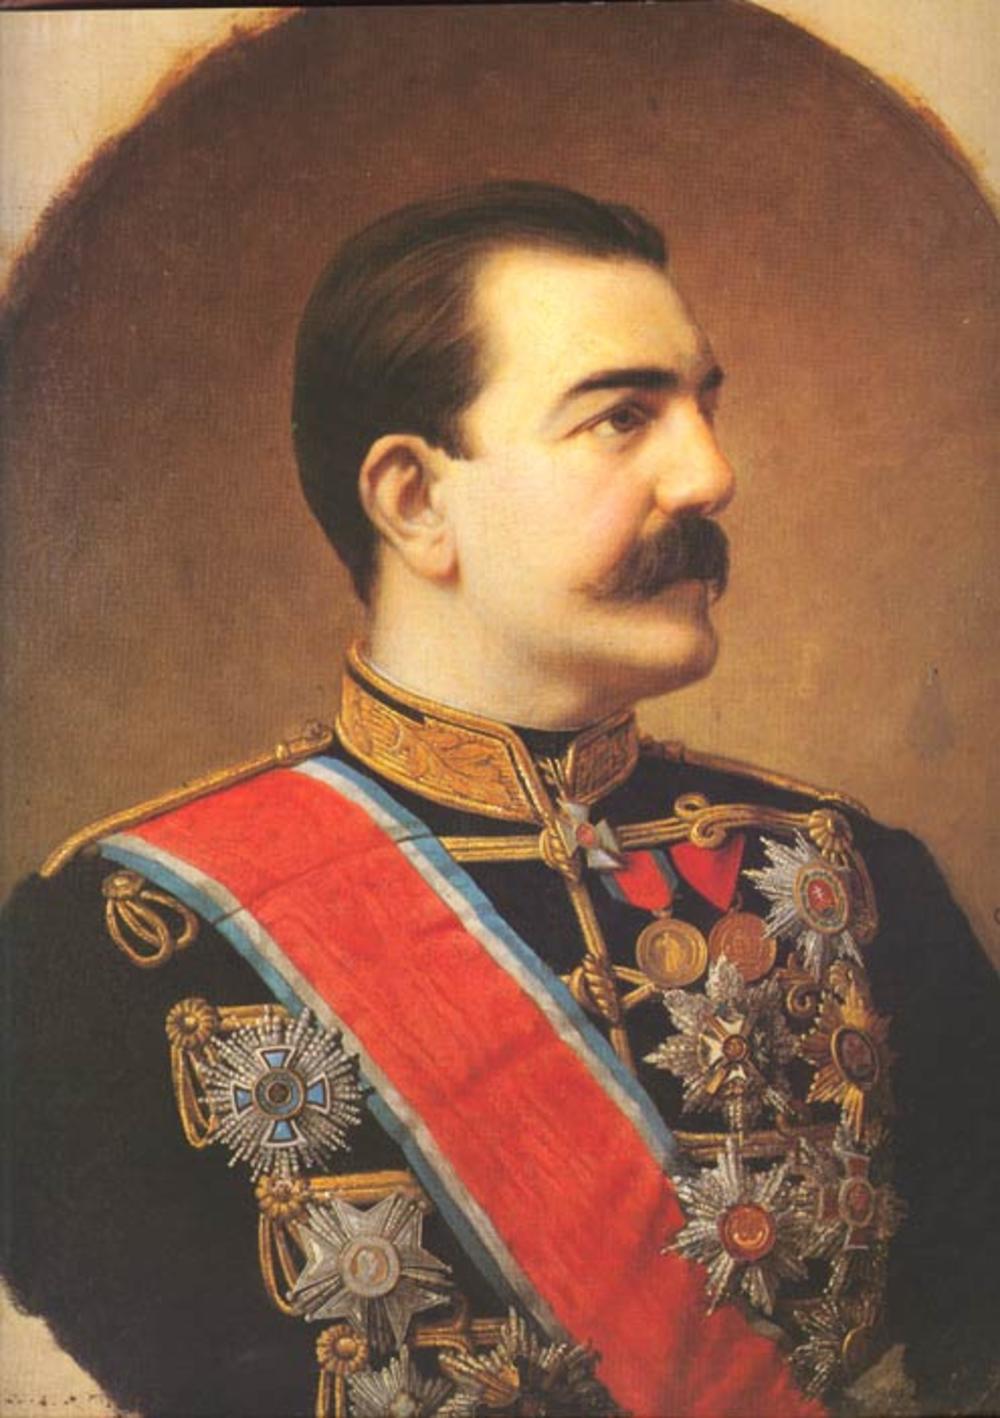 MILAN OBRENOVIĆ Portret sa slike je delo slikara Steve Todorovića, i nastao je 1881. godine. Nalazi se u Muzeju grada Beograda.